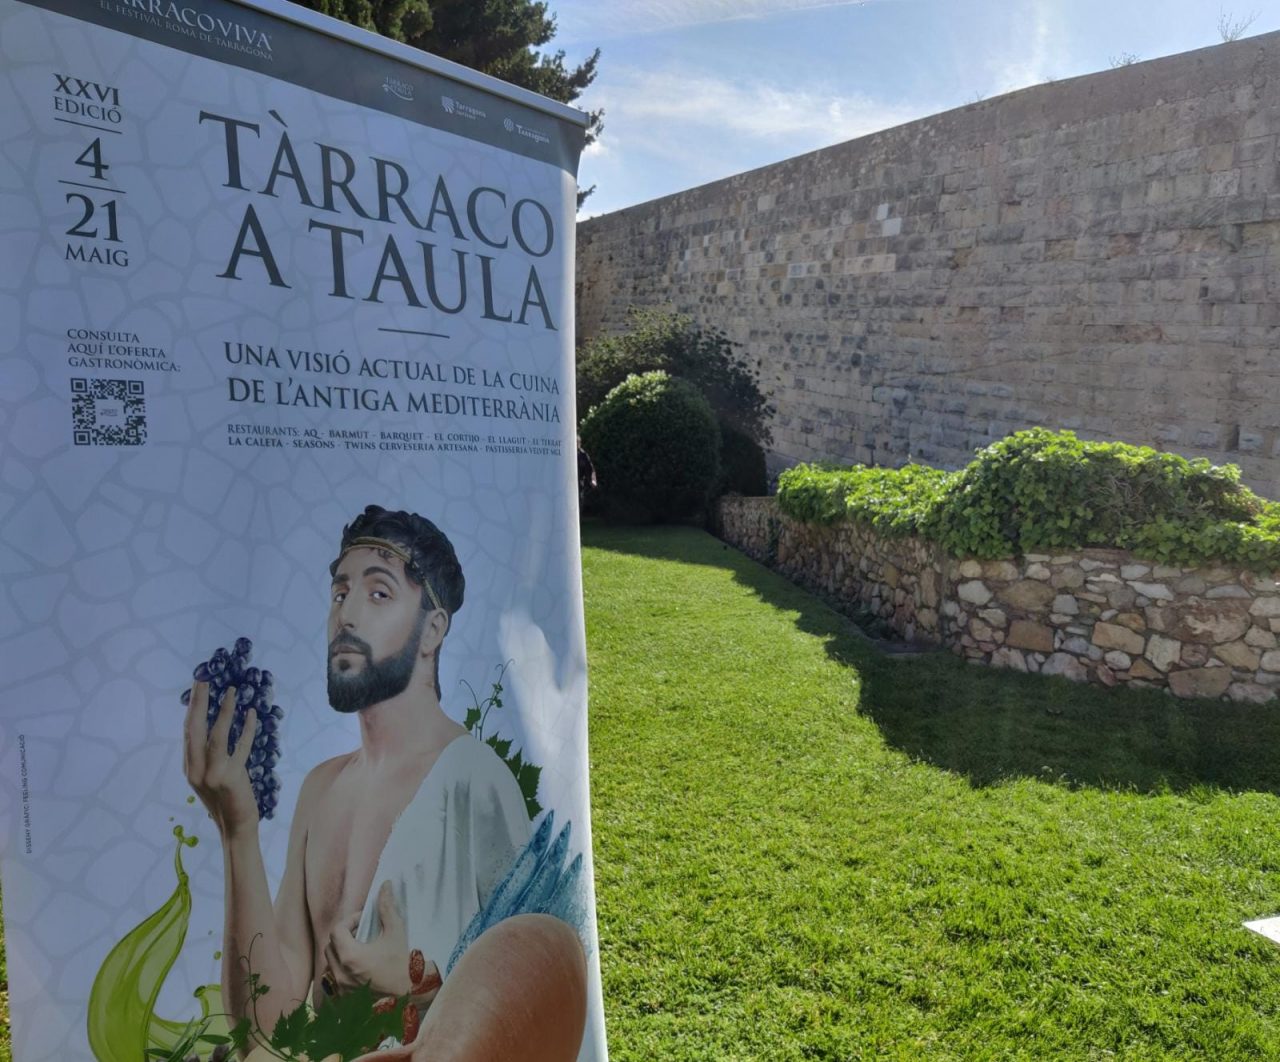 Tarraco-a-Taula-1280x1062.jpg